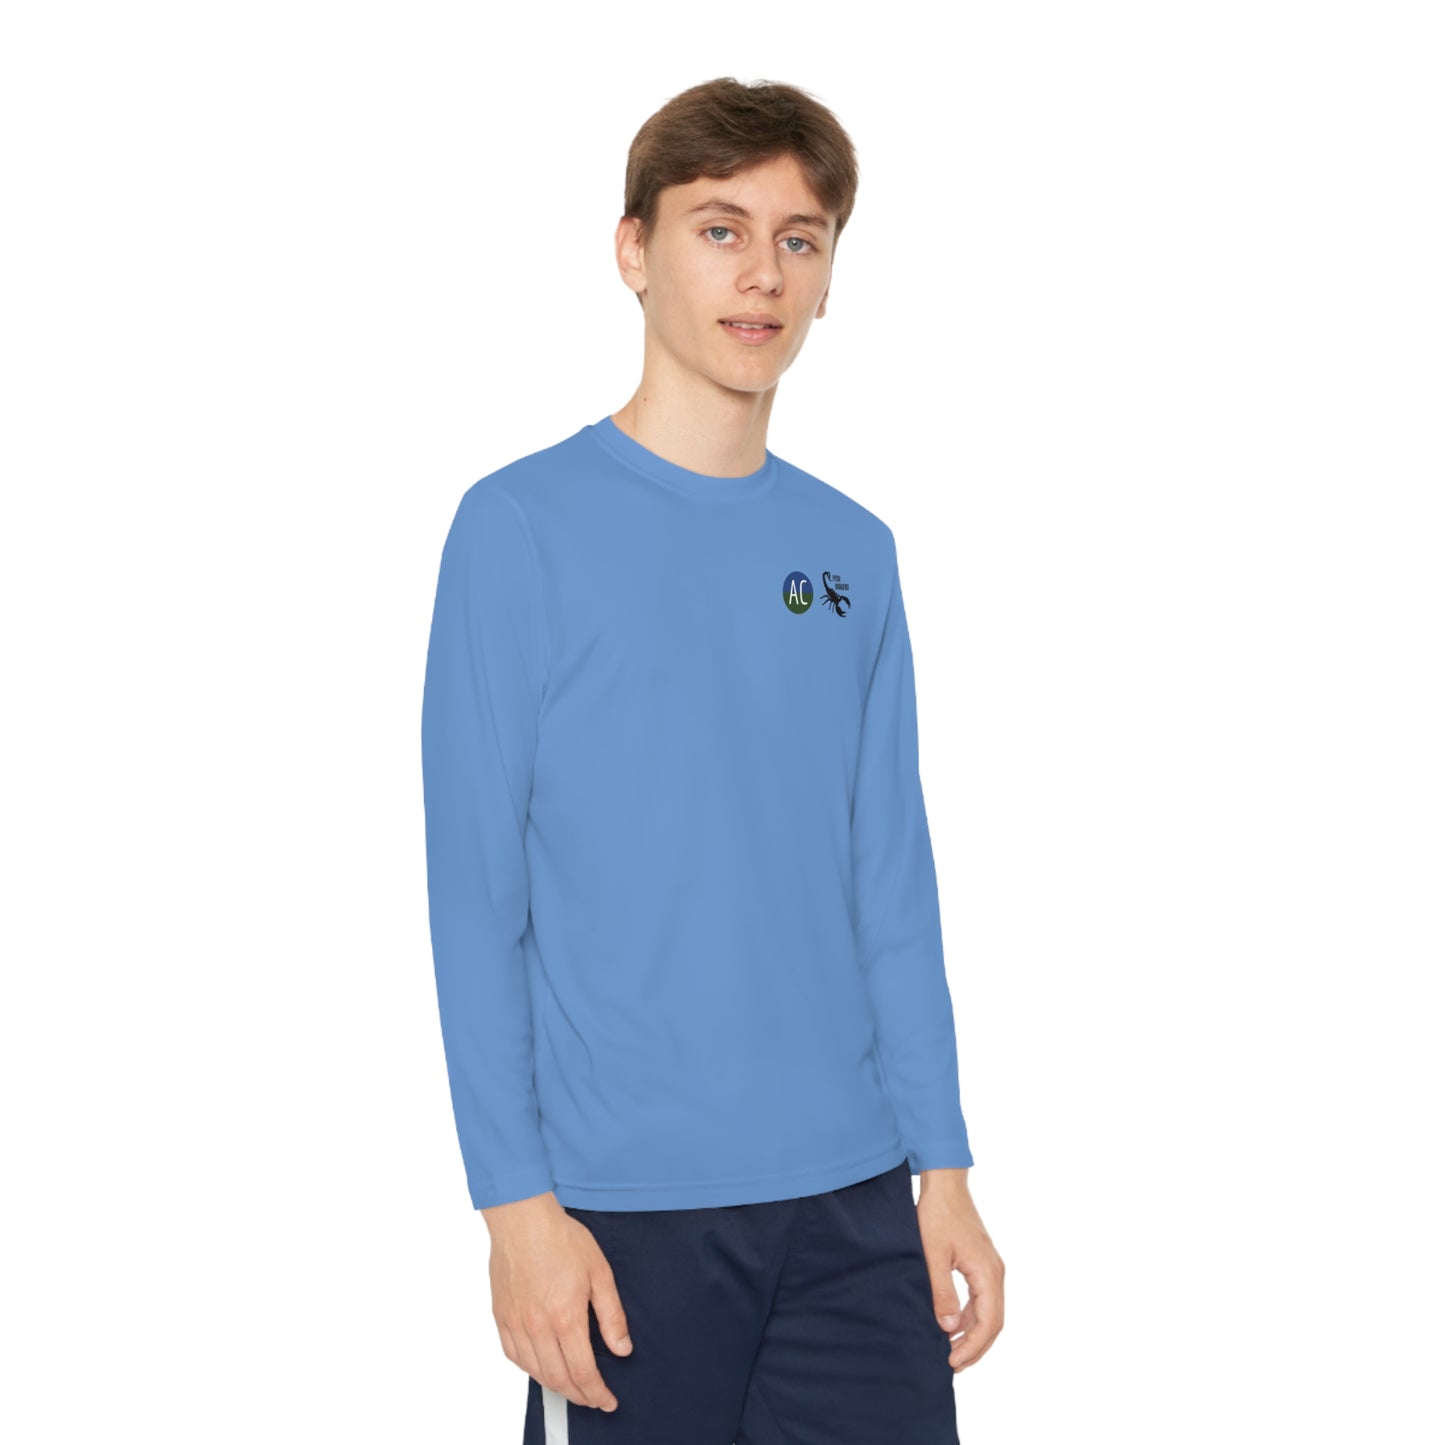 Active City Youth Athletic Long Sleeve Shirt (Unisex)